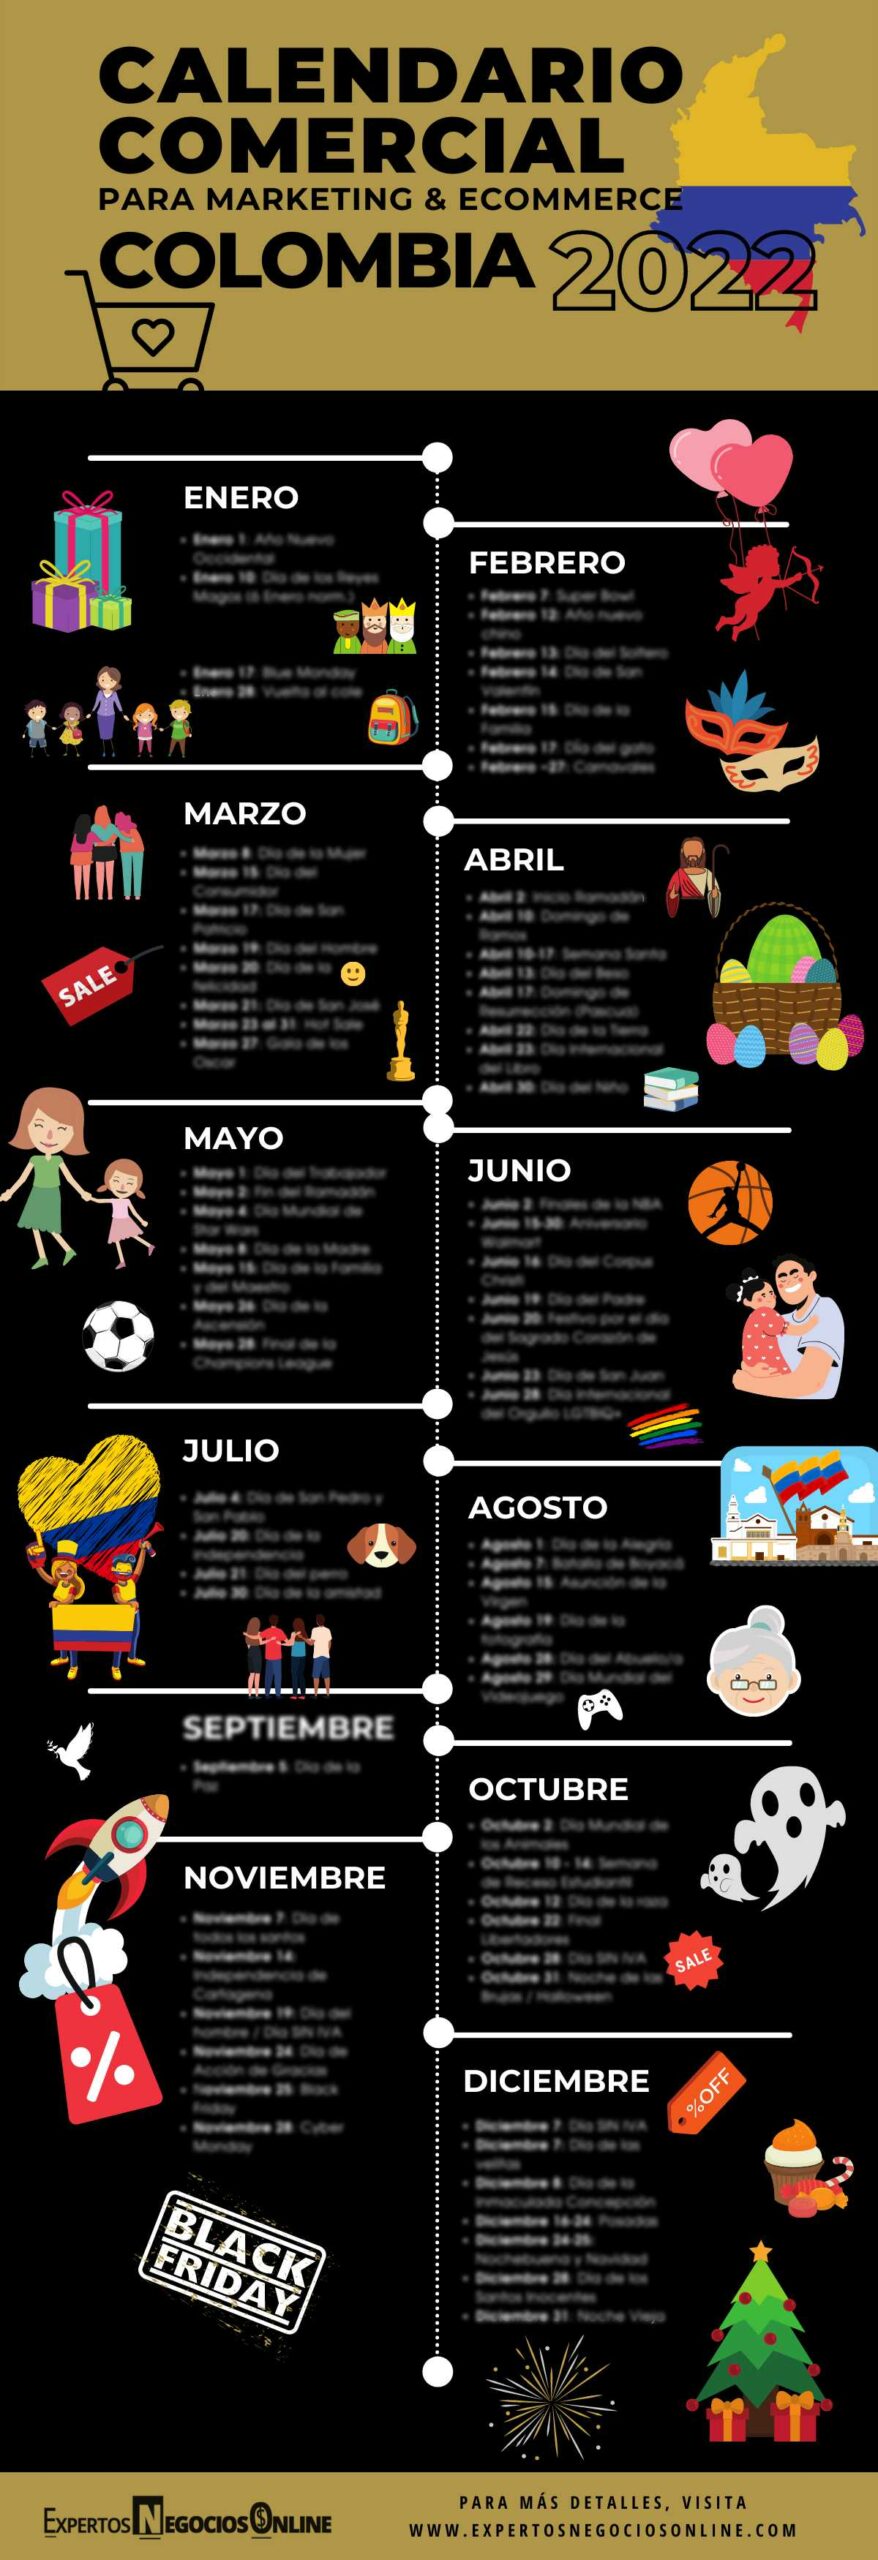 Descargar Calendario Comercial Colombia 2022 - Para Marketing Digital y eCommerce